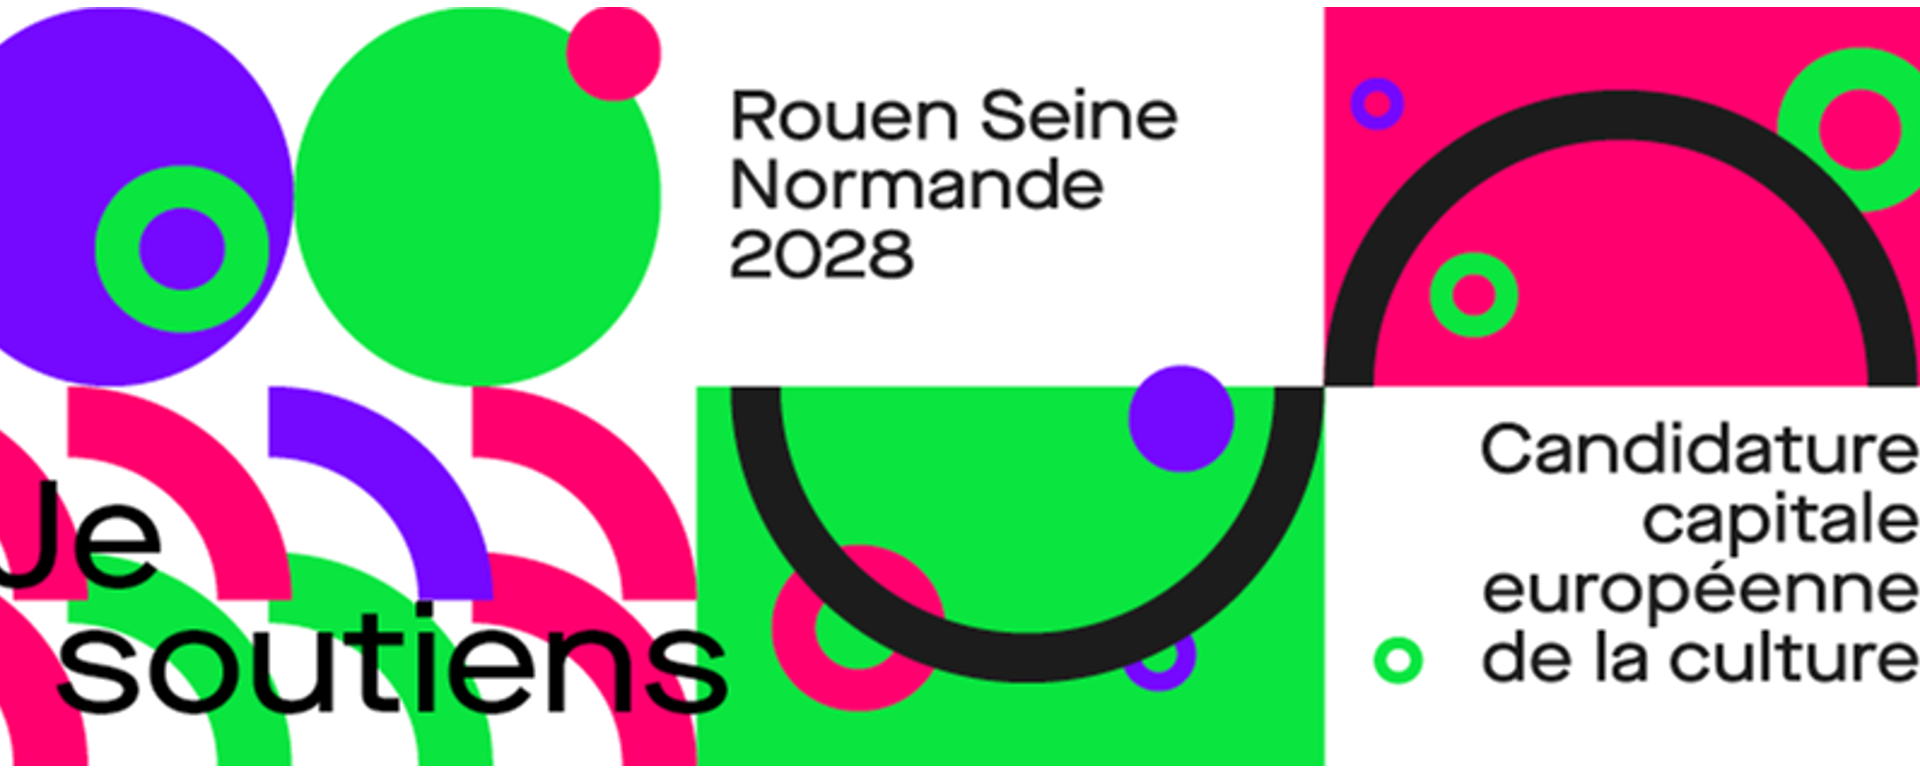 Rouen Seine Normande 2028